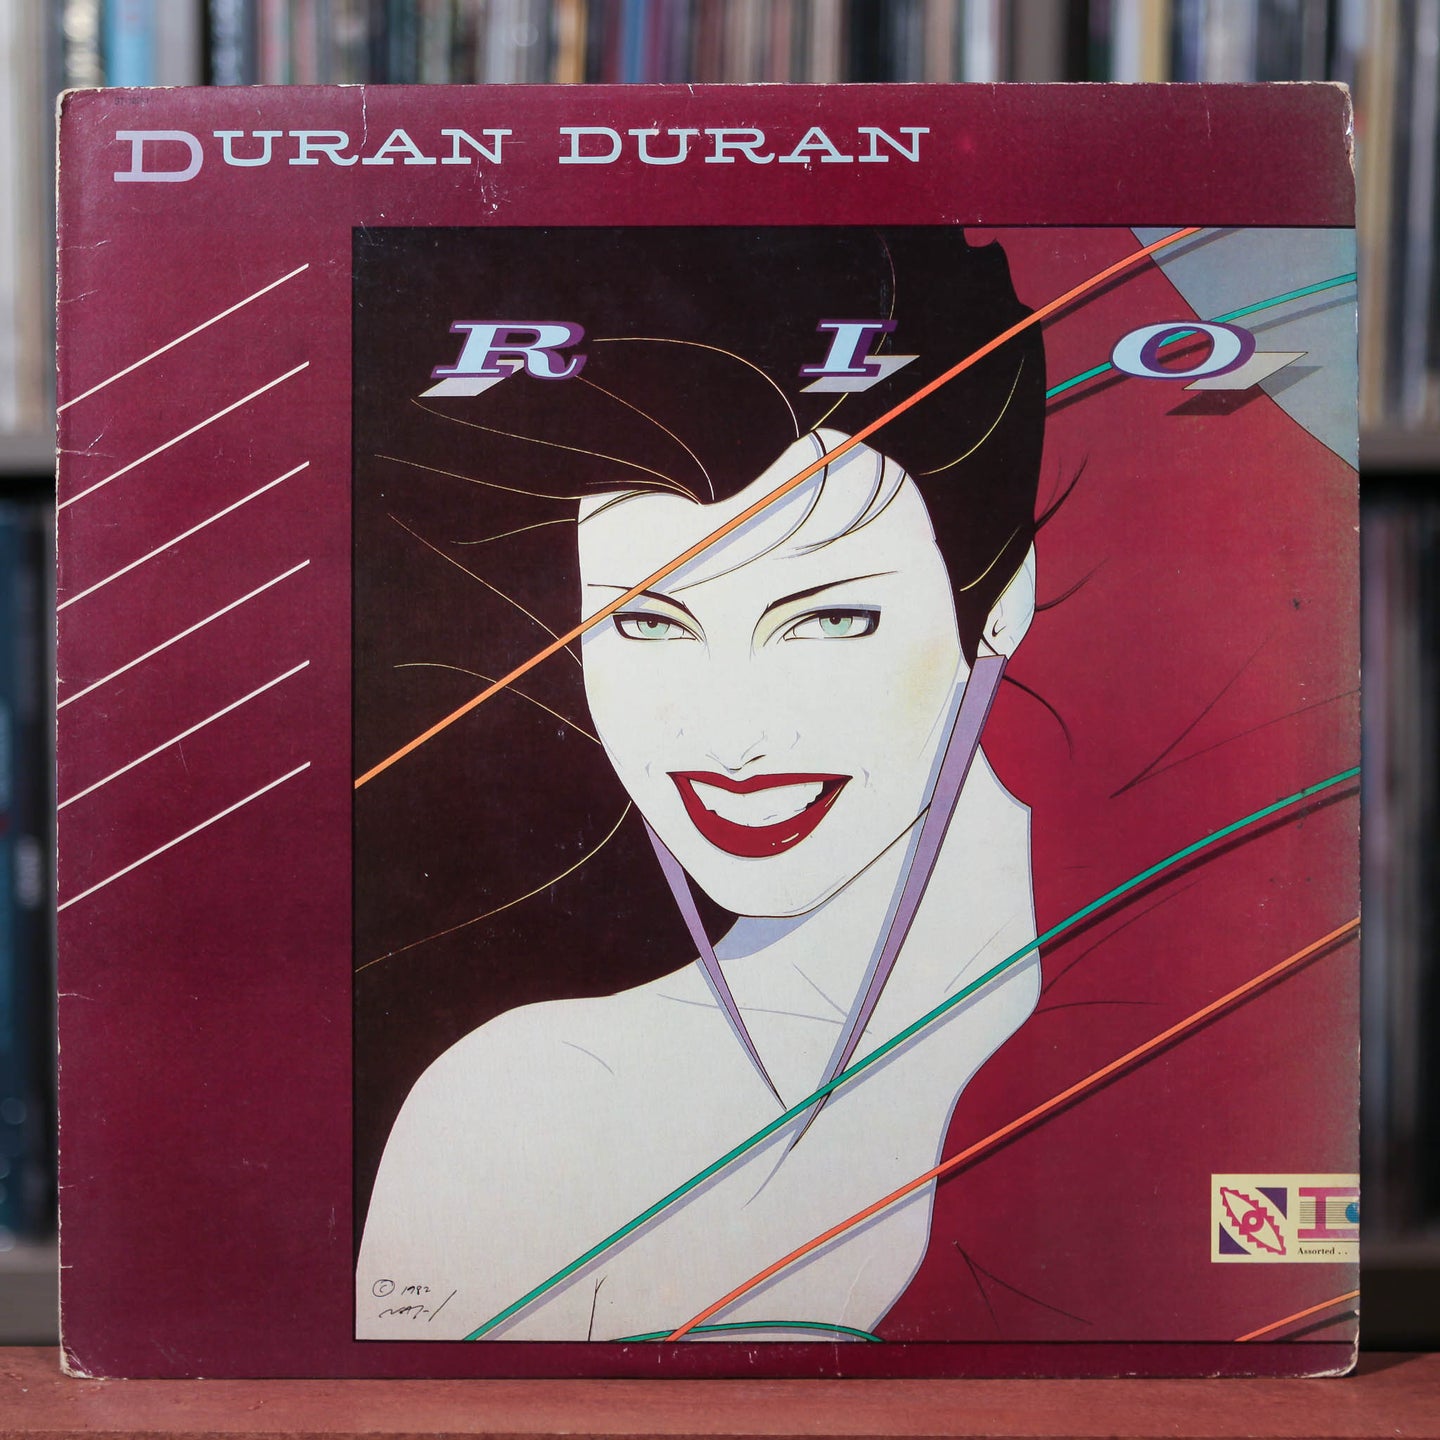 Duran Duran - Rio - 1982 Capitol, VG/VG